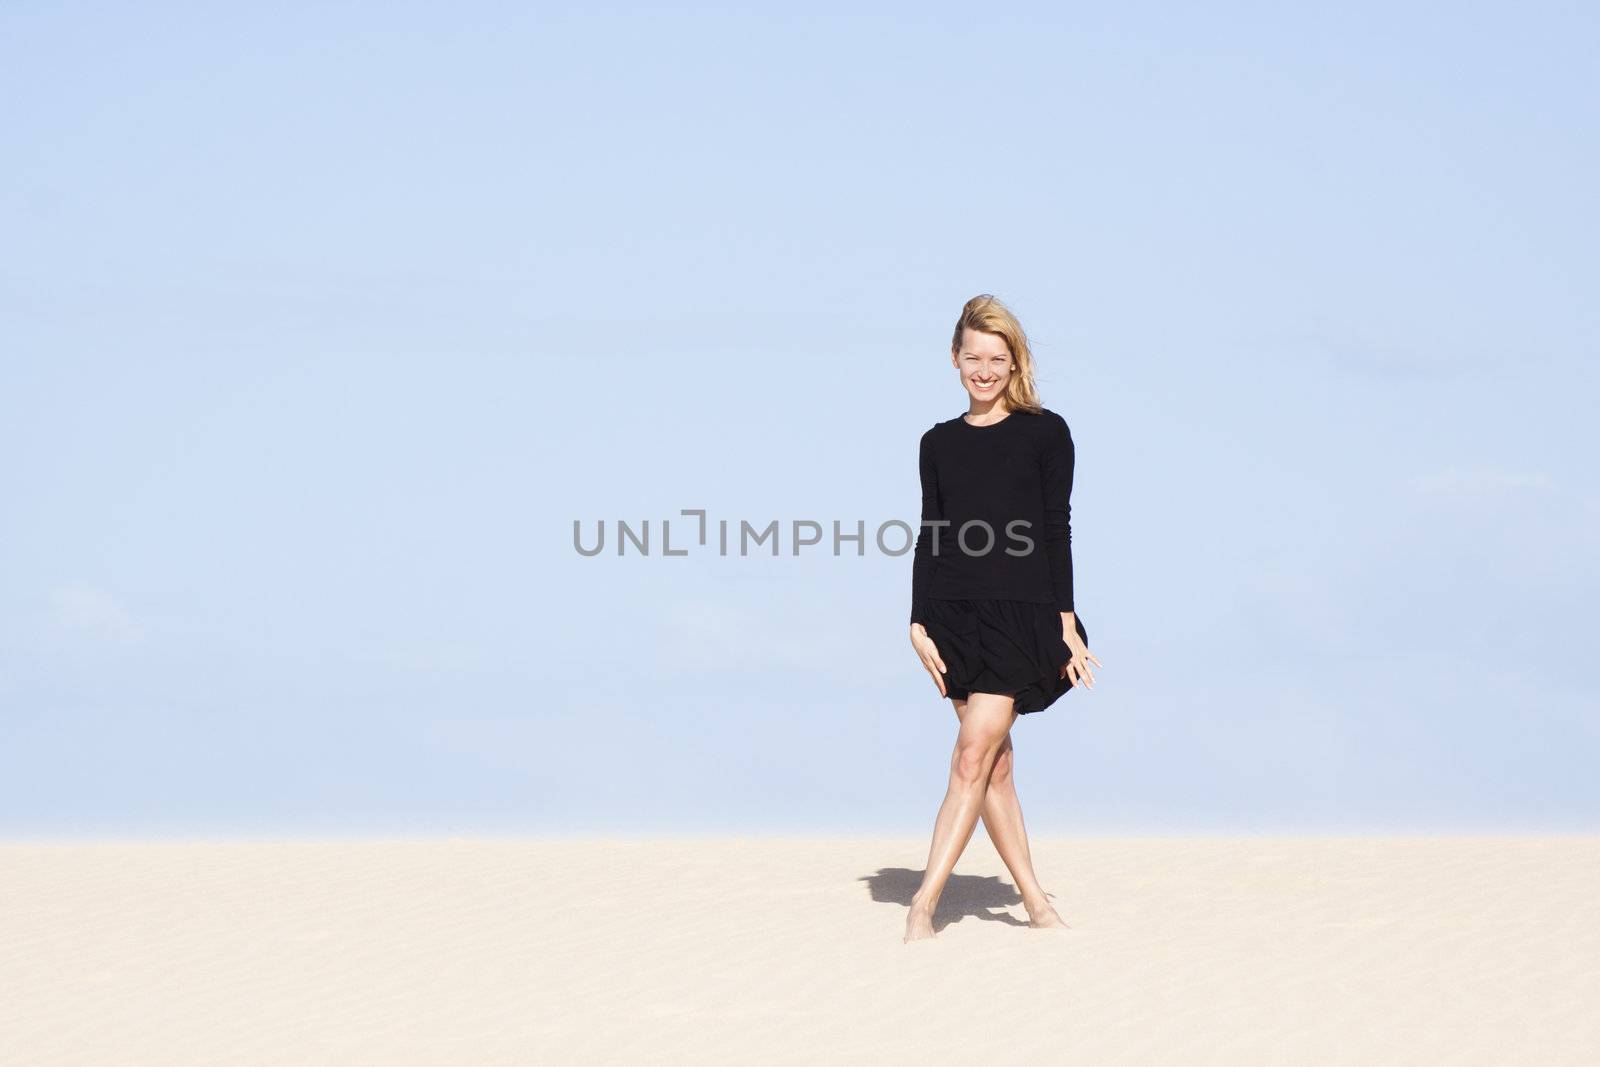 Beautifull girl in black dress posing on the sand dune.